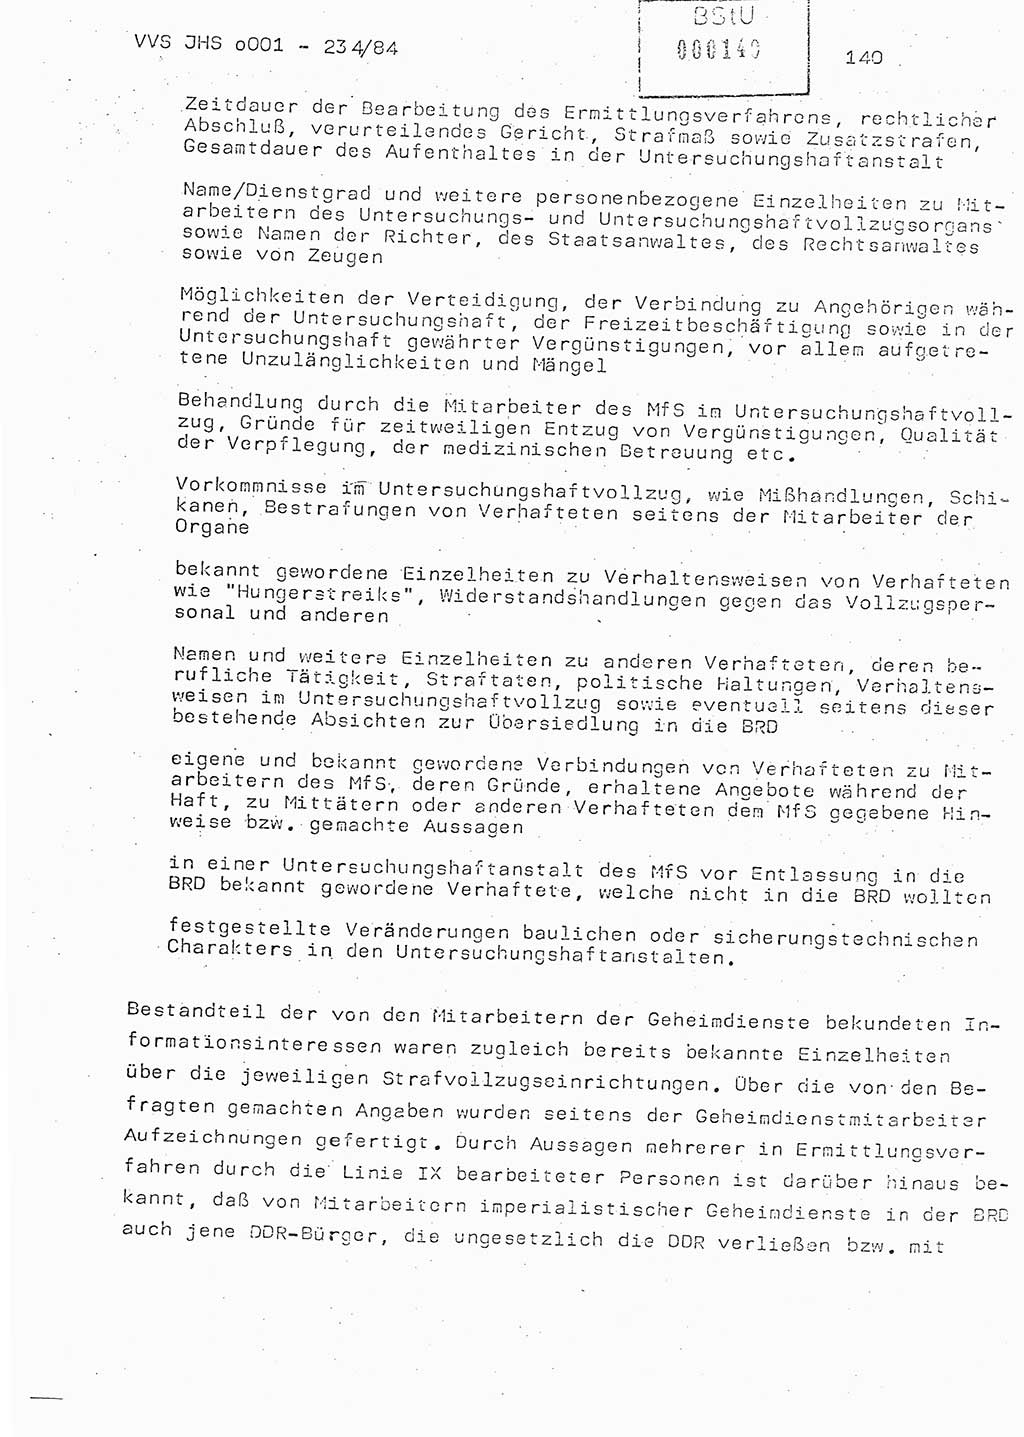 Dissertation Oberst Siegfried Rataizick (Abt. ⅩⅣ), Oberstleutnant Volkmar Heinz (Abt. ⅩⅣ), Oberstleutnant Werner Stein (HA Ⅸ), Hauptmann Heinz Conrad (JHS), Ministerium für Staatssicherheit (MfS) [Deutsche Demokratische Republik (DDR)], Juristische Hochschule (JHS), Vertrauliche Verschlußsache (VVS) o001-234/84, Potsdam 1984, Seite 140 (Diss. MfS DDR JHS VVS o001-234/84 1984, S. 140)